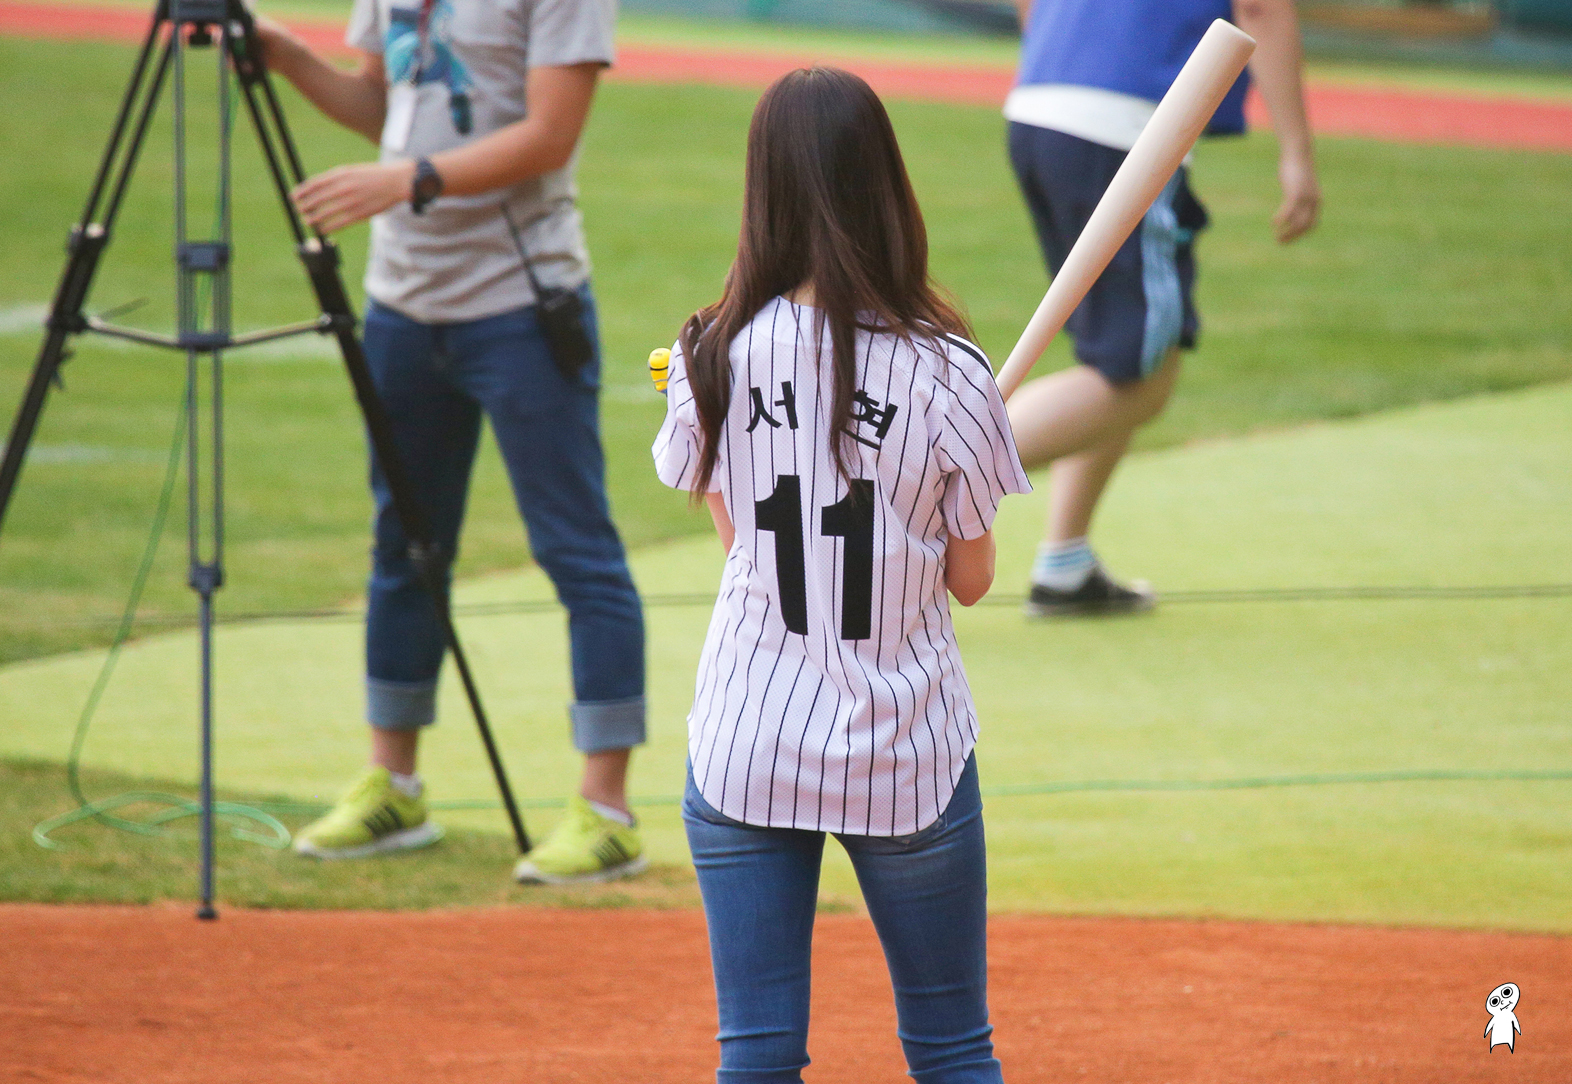 [PIC][27-08-2013]TaeYeon và SeoHyun ném bóng mở màn cho trận đấu bóng chày tại SVĐ Jamsil vào chiều nay - Page 2 250C583D521CBD801A7D7E